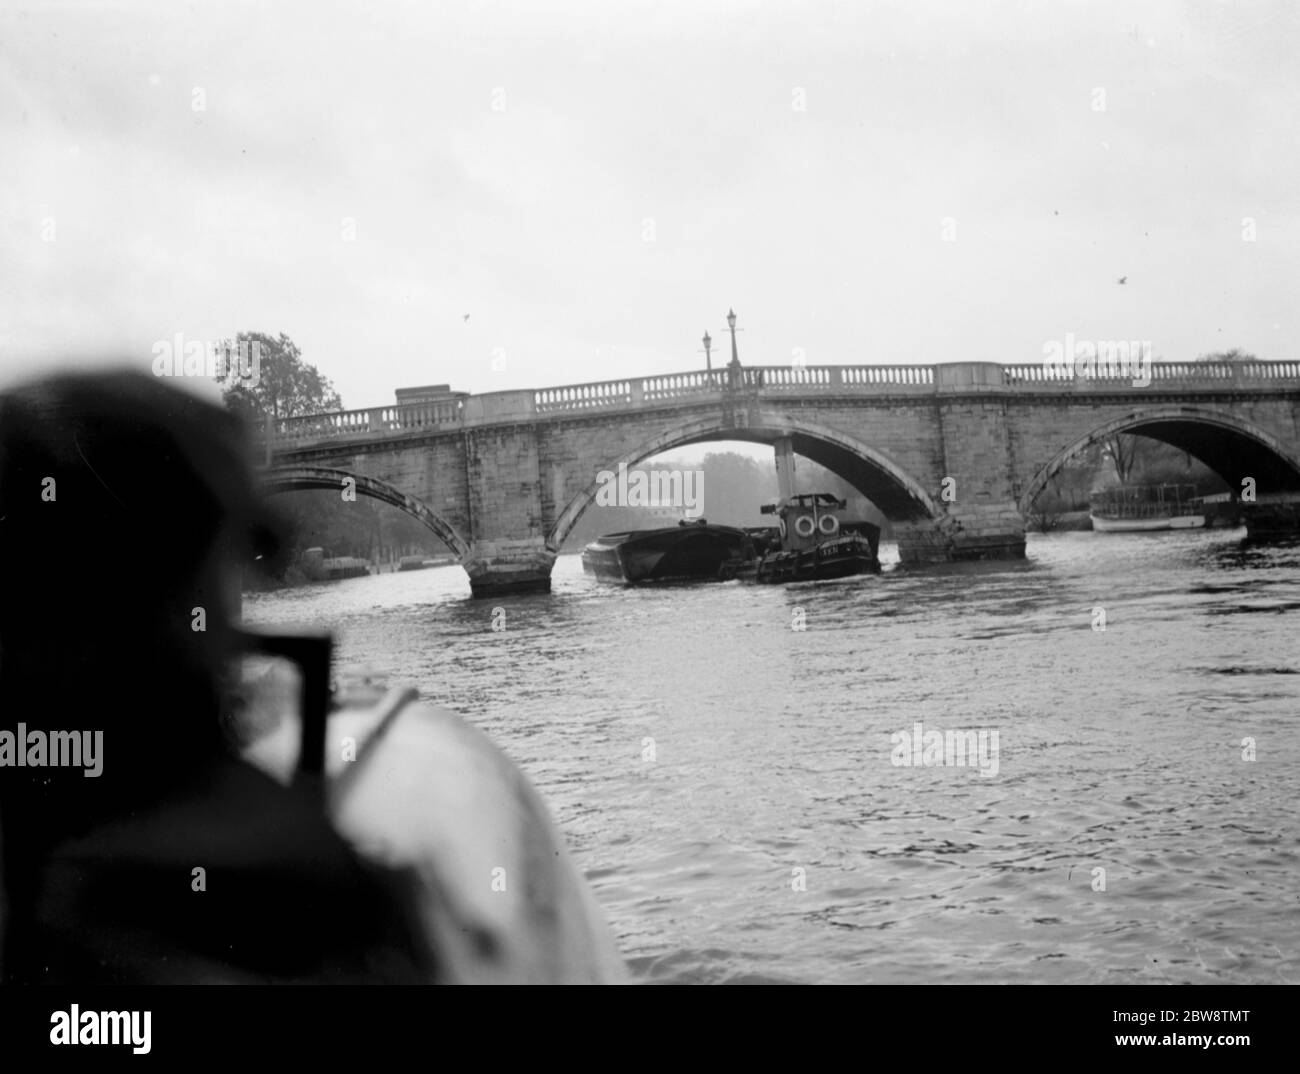 Association of Master Lightermen und Barge Besitzer haben einen Anträge für die Reparatur von Richmond Bridge an der Themse in London. Fotos zeigen einen Schlepper, der einen beladenen Lastkahn unter der Richmond Bridge schleppt. 1936 26. Oktober 1936 Stockfoto